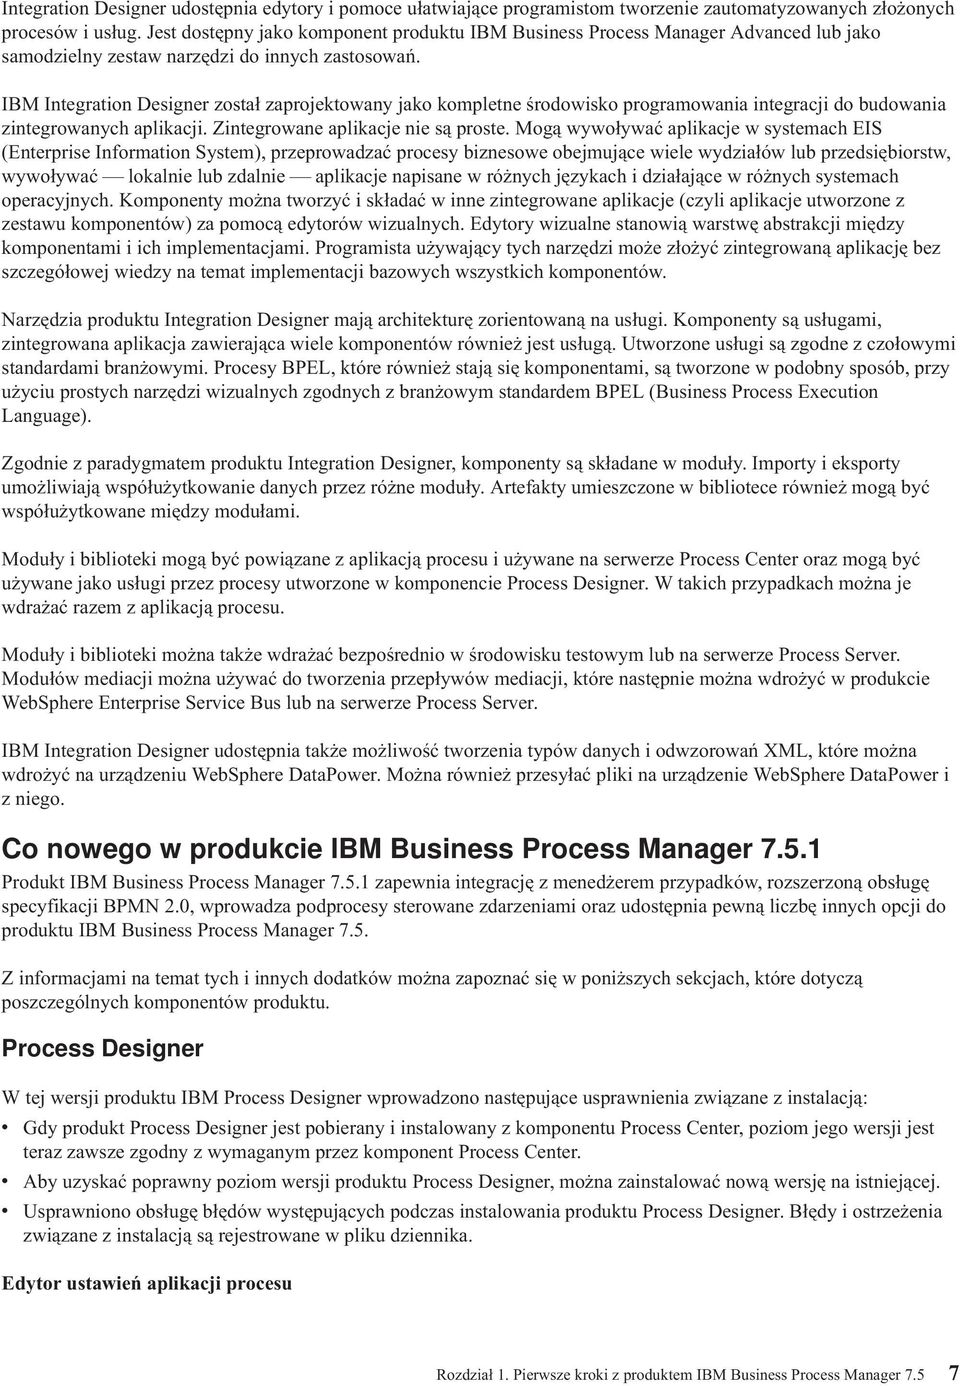 IBM Integration Designer został zaprojektowany jako kompletne środowisko programowania integracji do budowania zintegrowanych aplikacji. Zintegrowane aplikacje nie są proste.